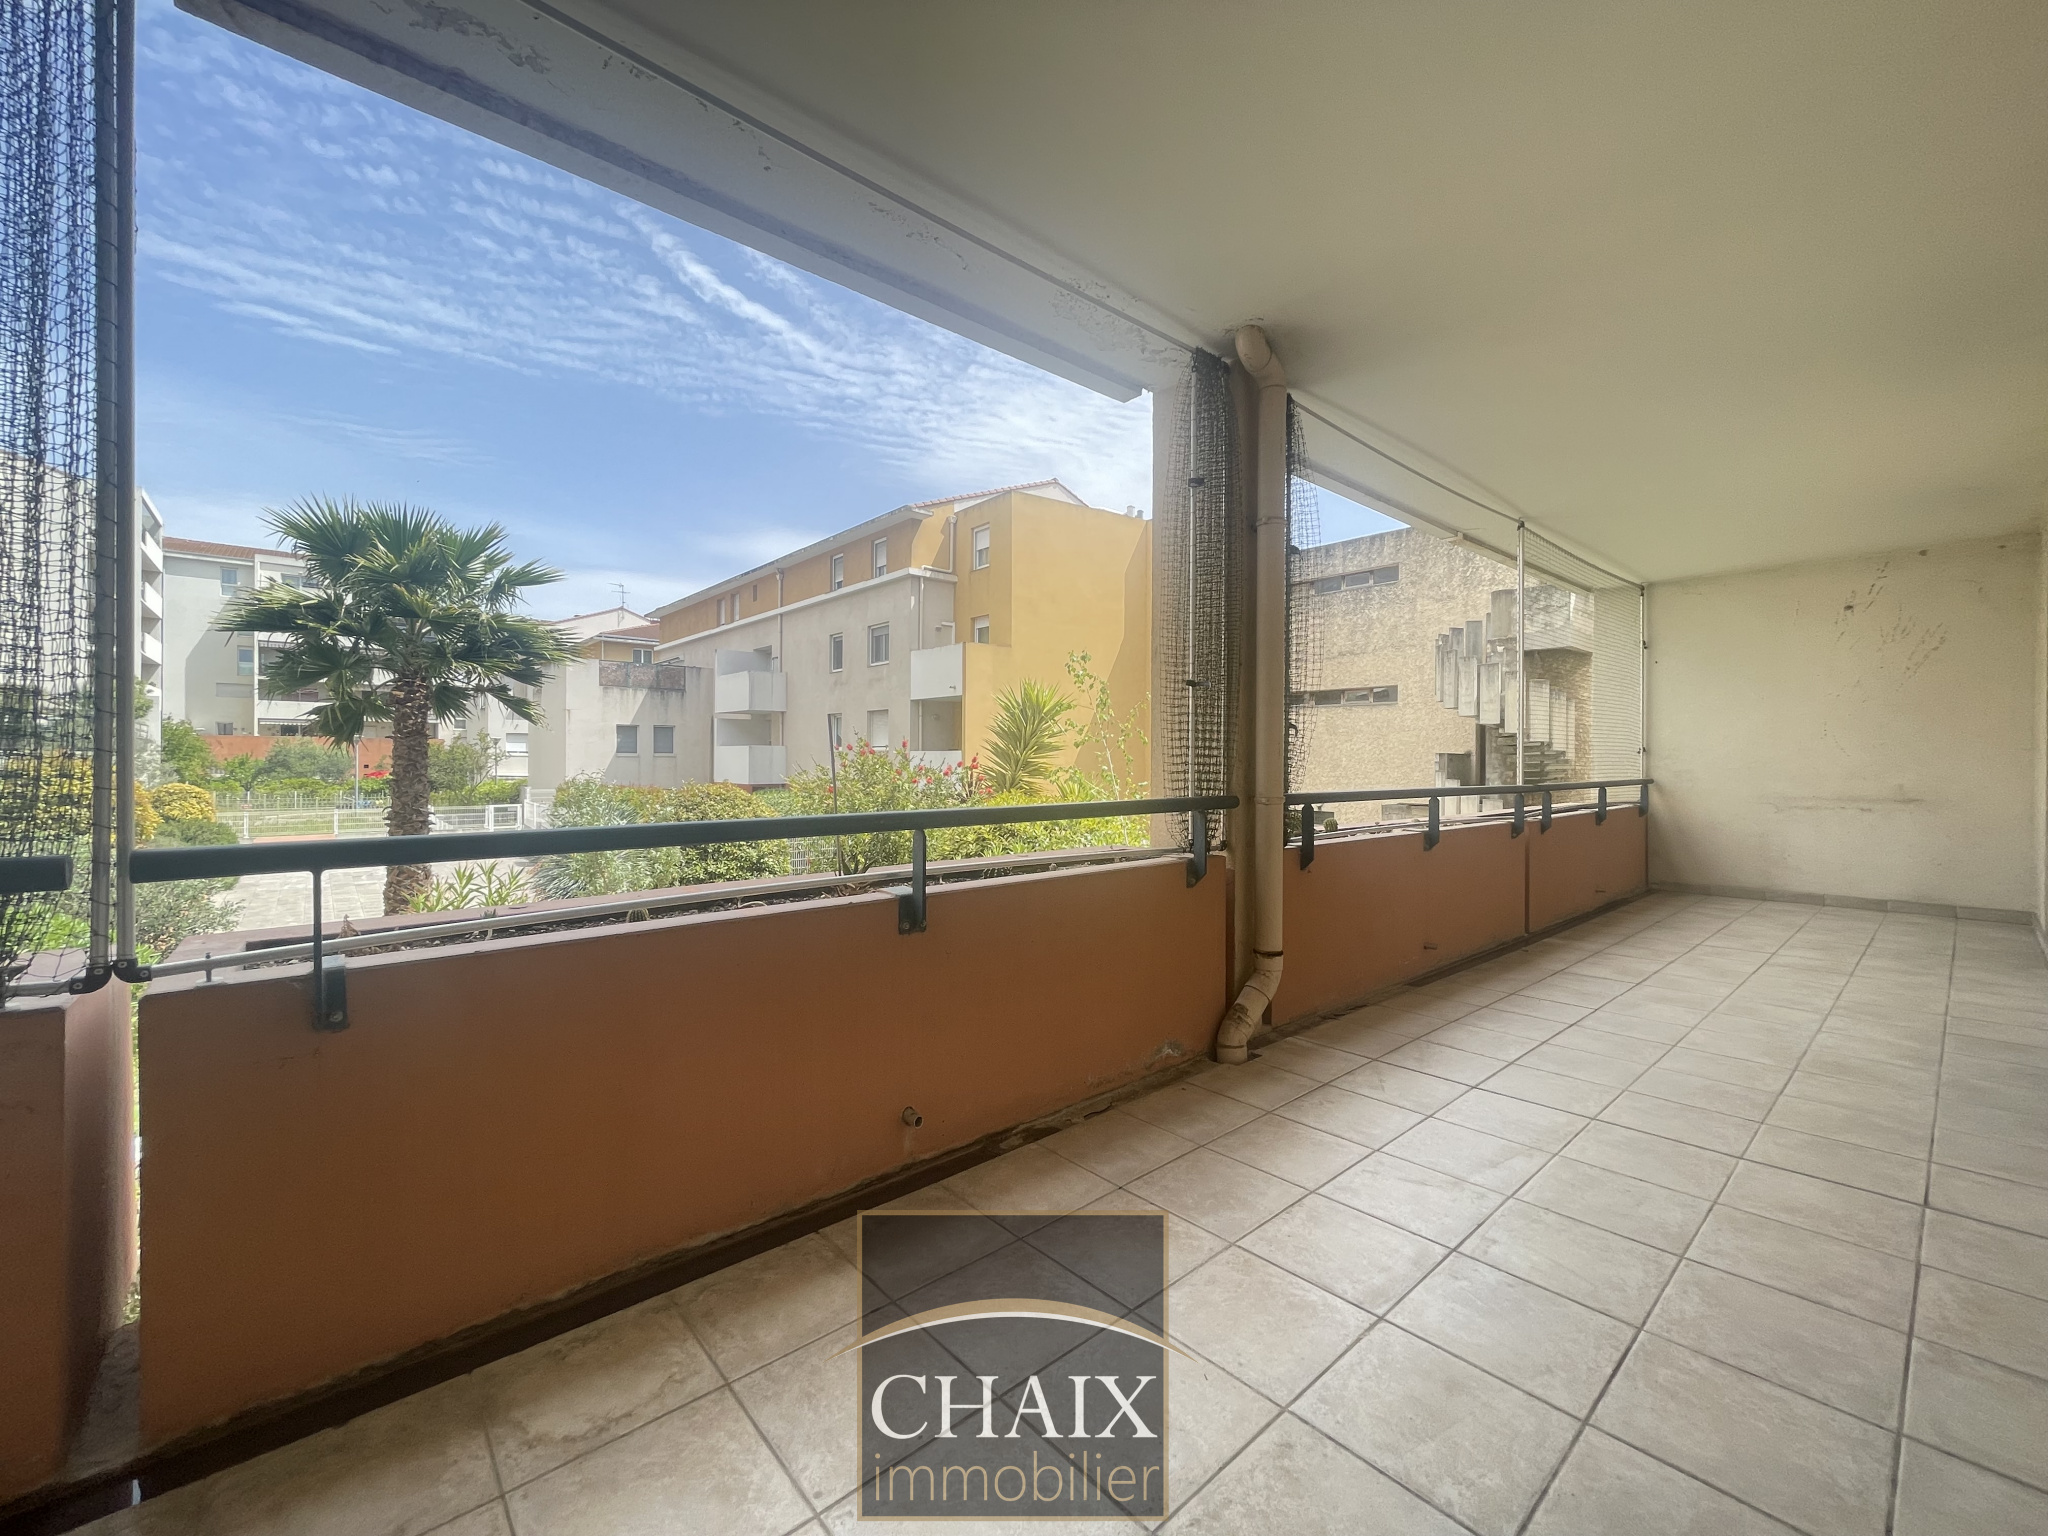 Vente Appartement 65m² 3 Pièces à Aubagne (13400) - Chaix Immobilier